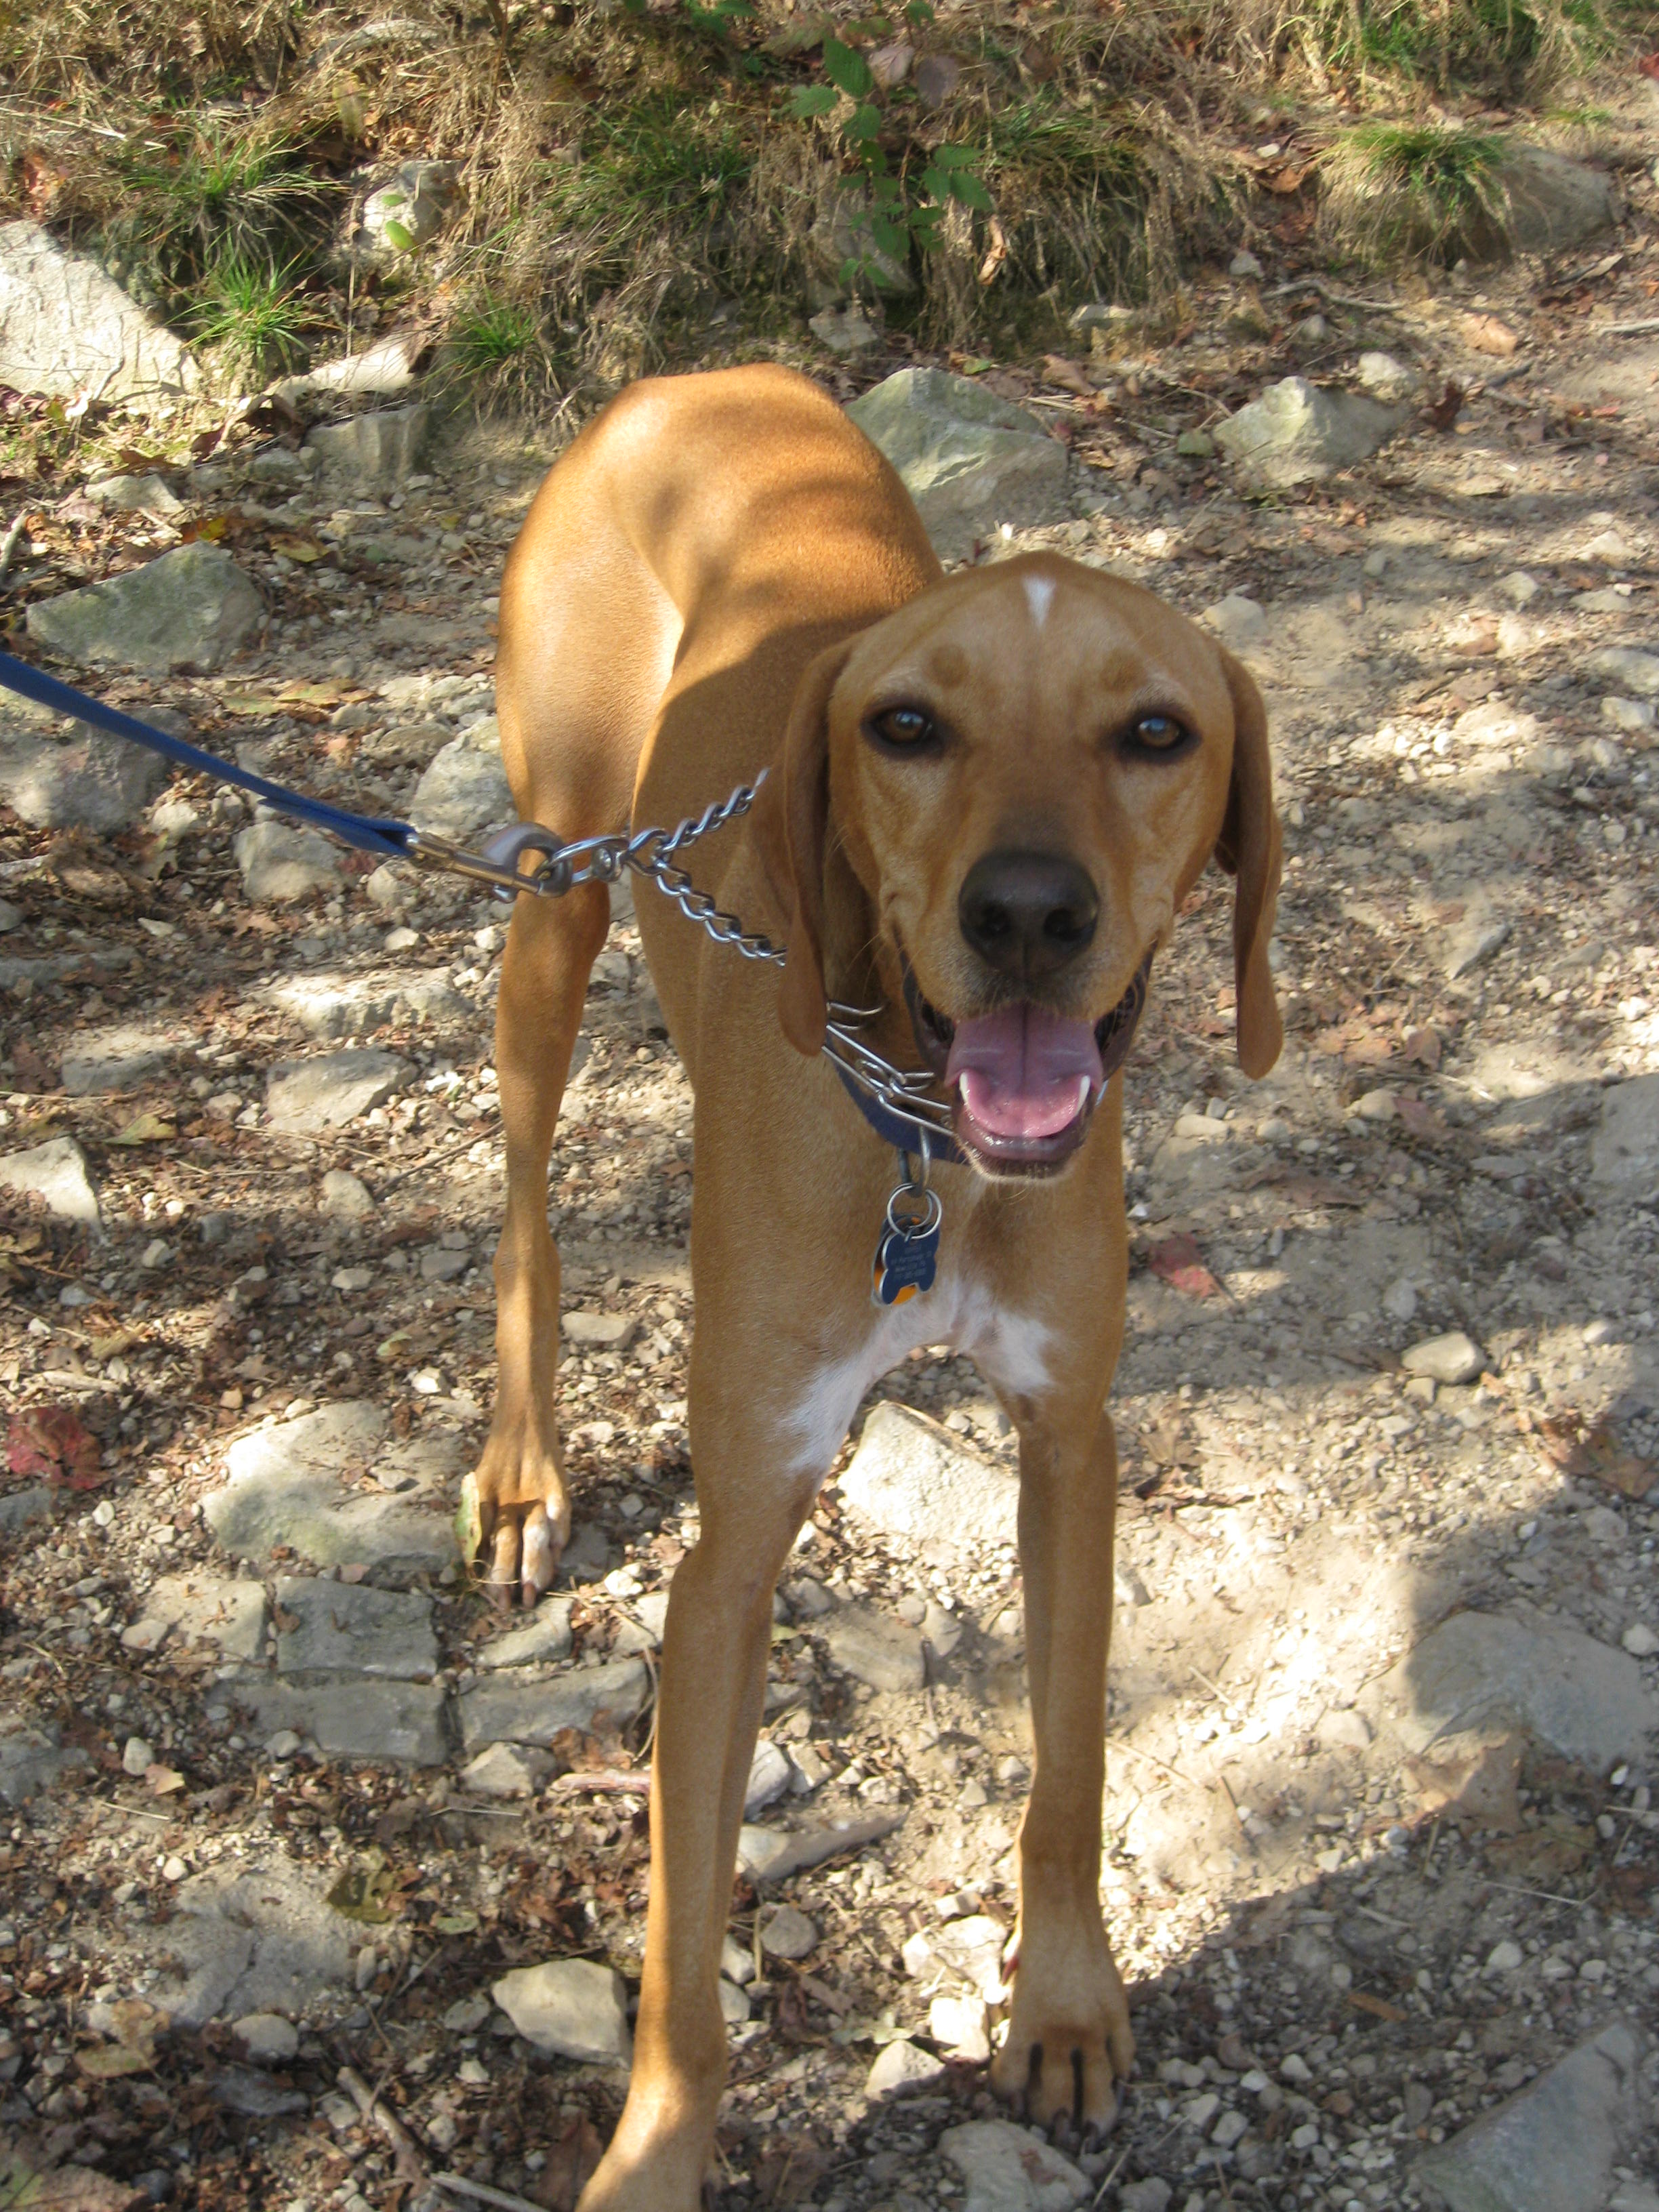 Cute Redbone Coonhound dog photo.